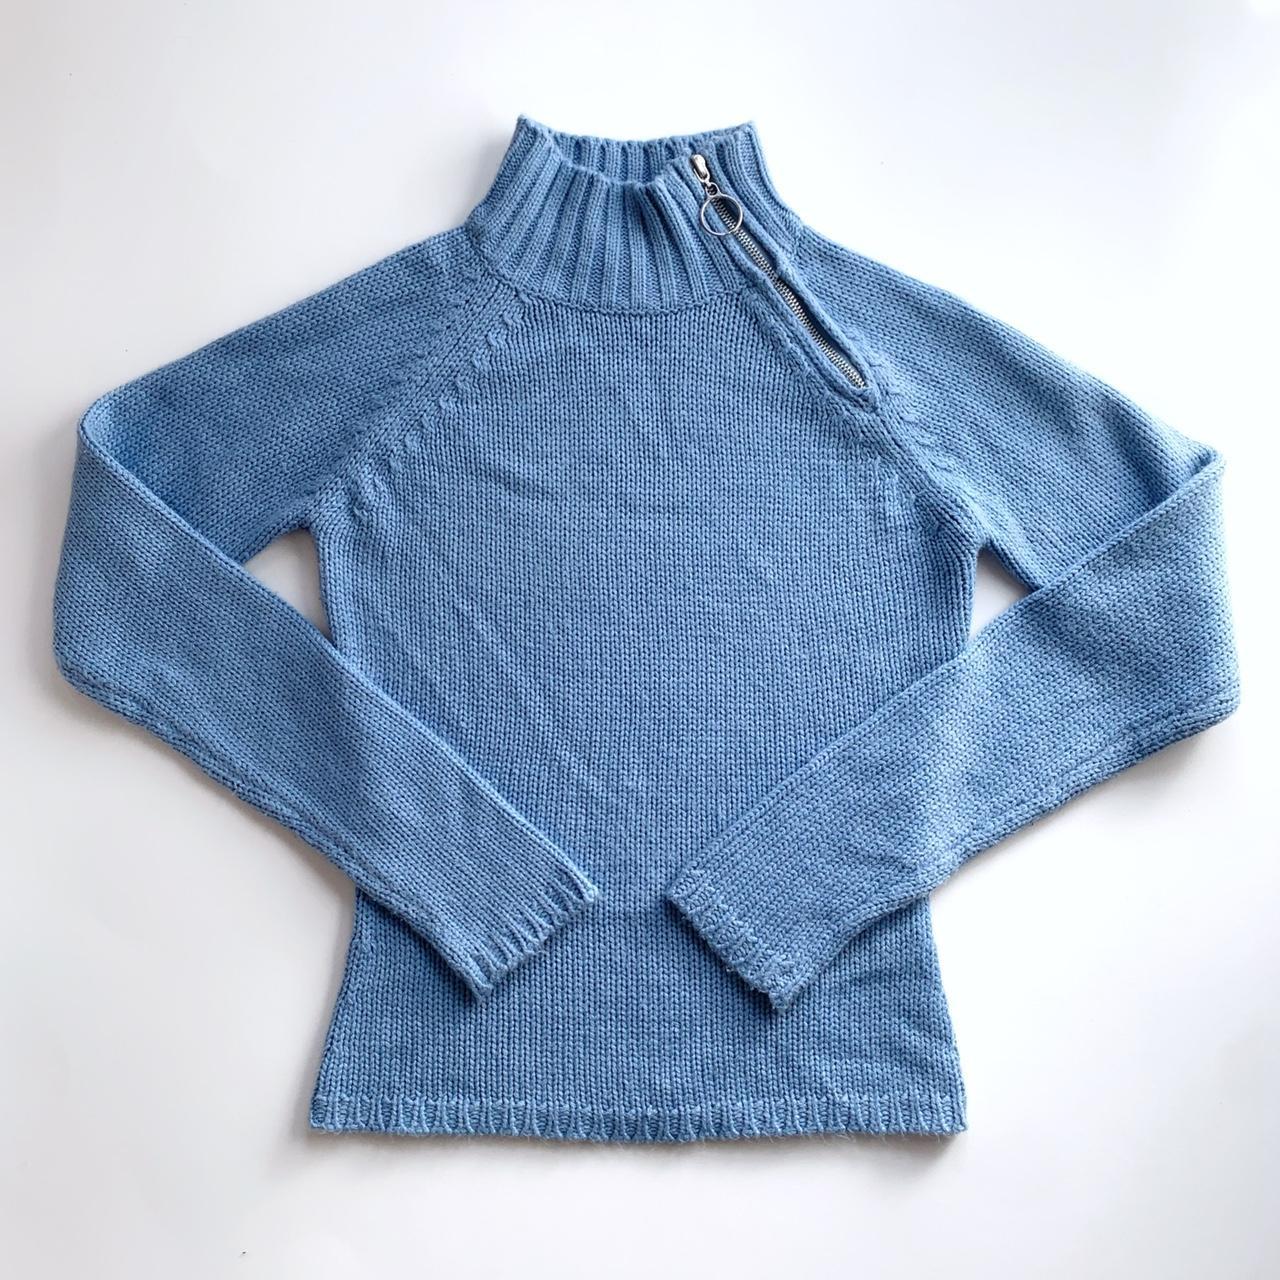 90s Soft Blue O-Ring Sweater 🫐 🚫 NO offers 🚫 NO... - Depop